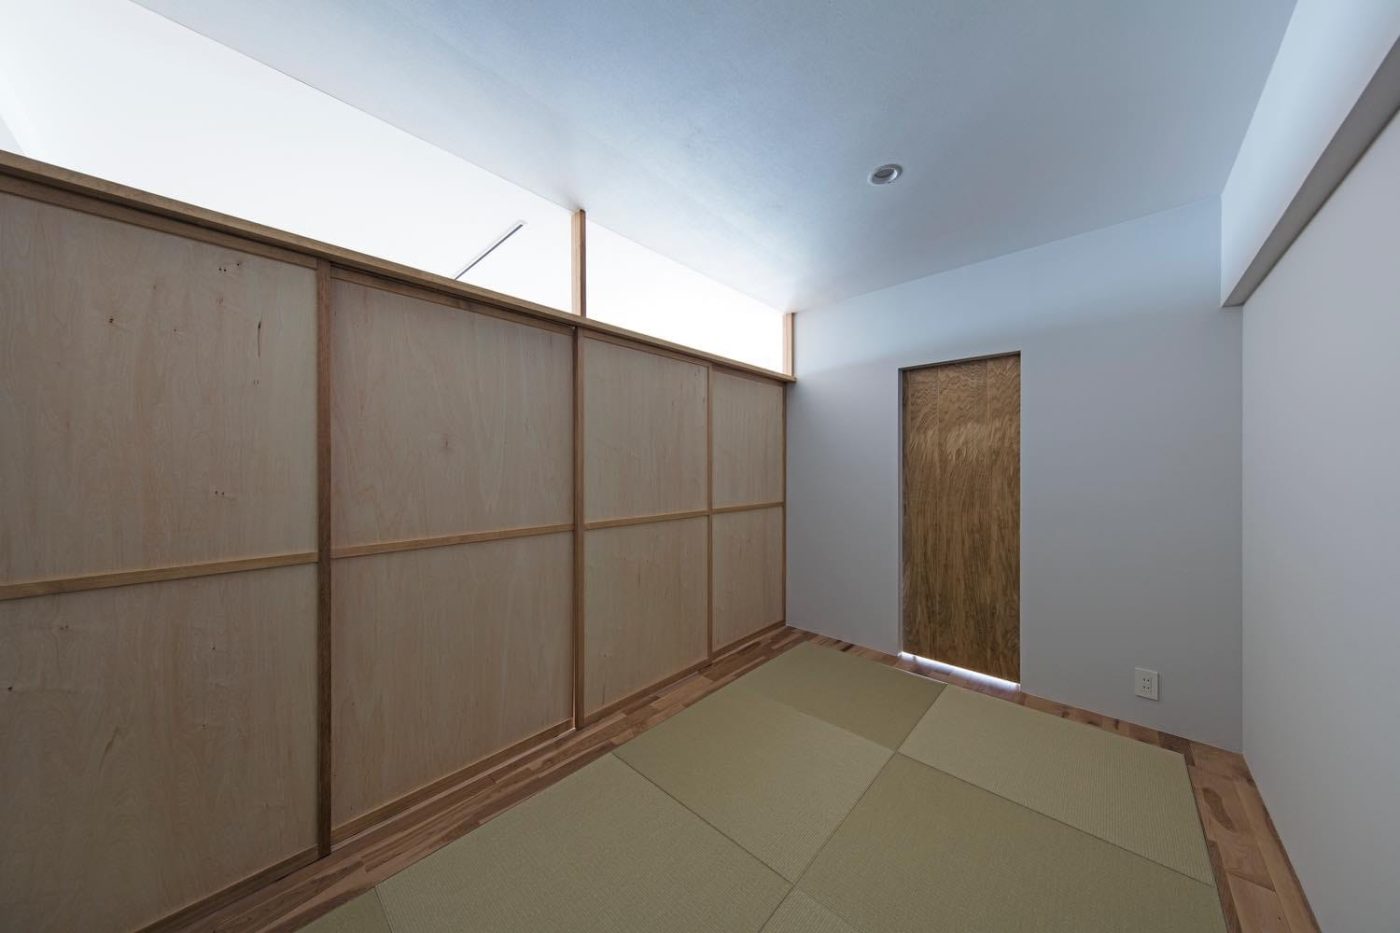 床仕上げの組み合わせで空間のつながりや使い方をデザイン11